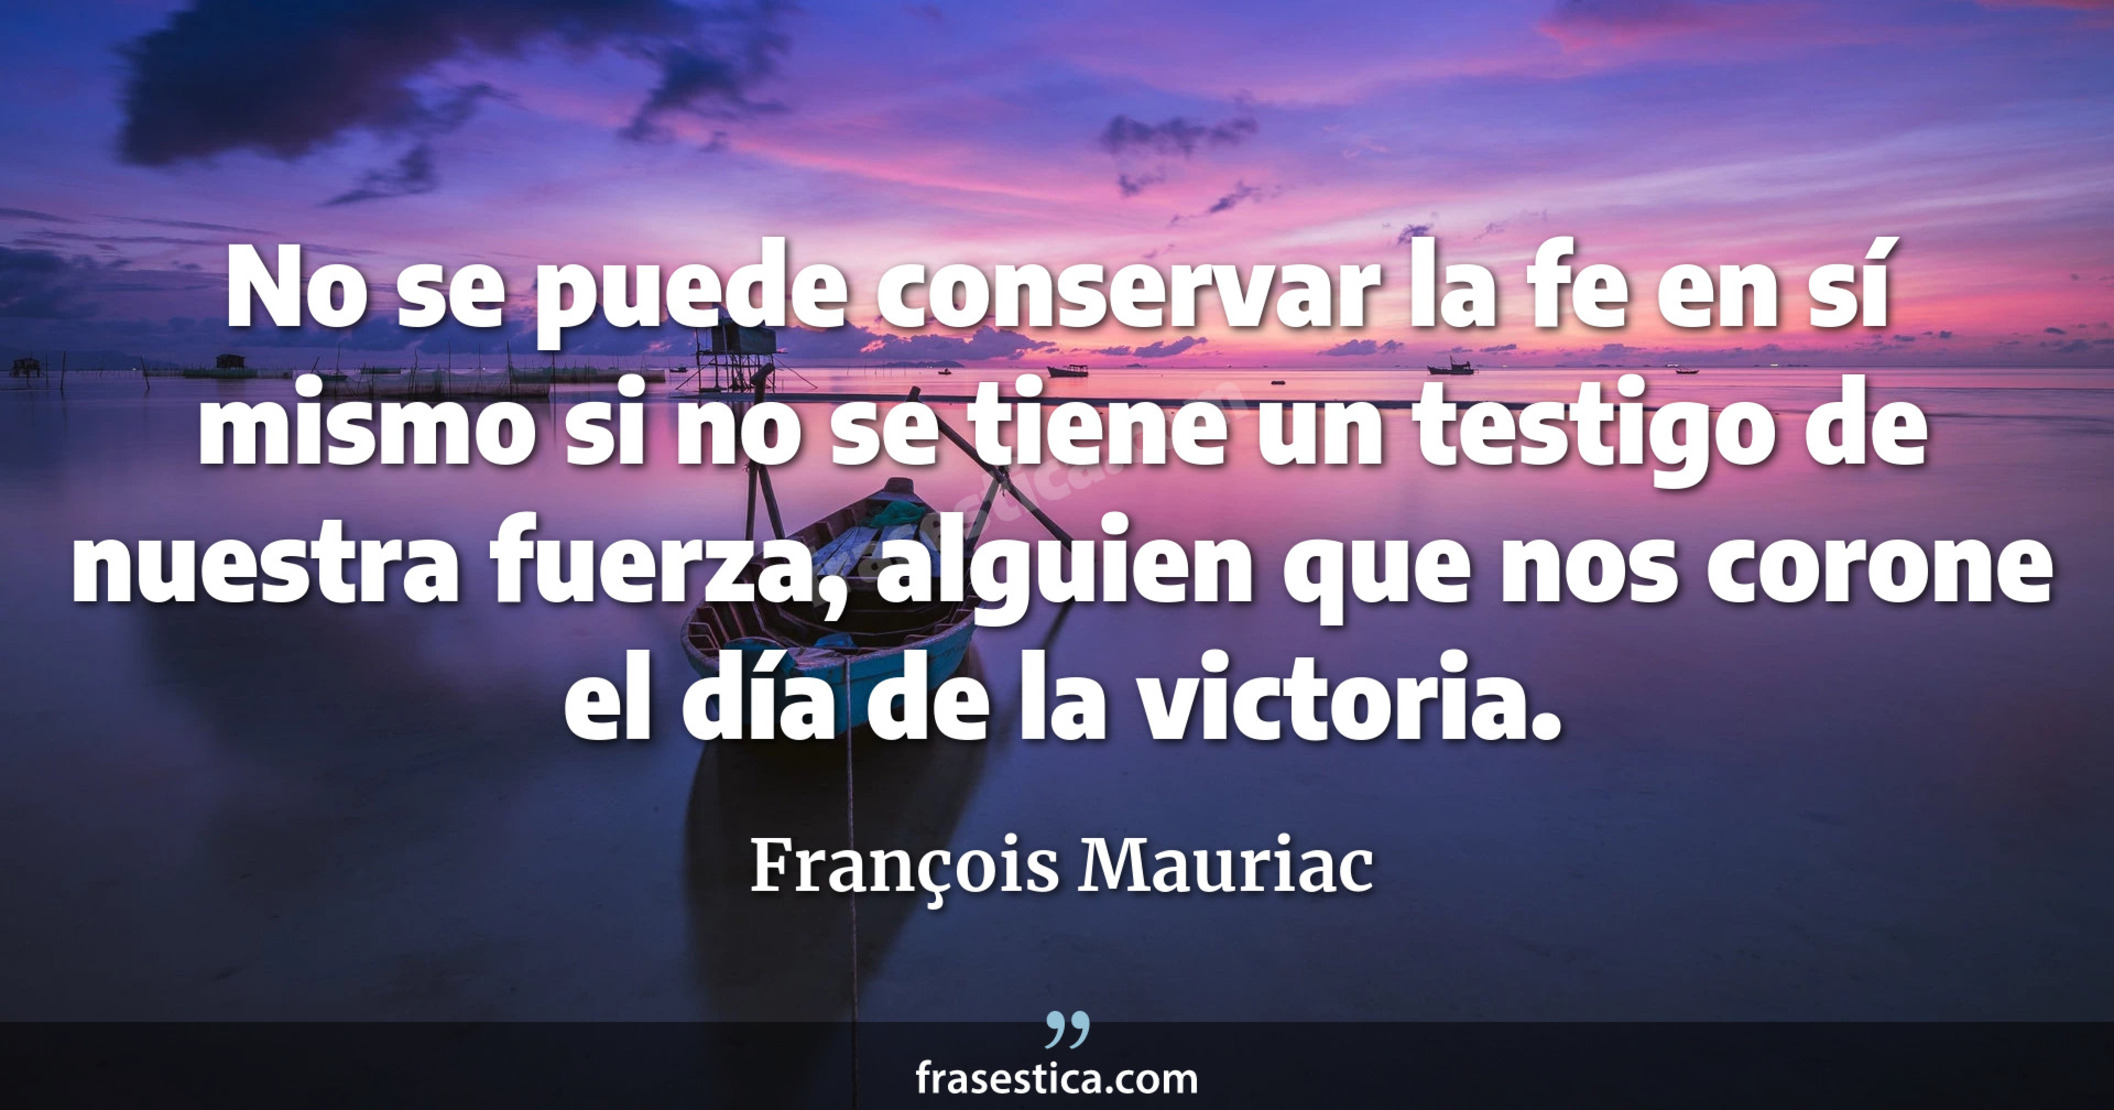 No se puede conservar la fe en sí mismo si no se tiene un testigo de nuestra fuerza, alguien que nos corone el día de la victoria. - François Mauriac